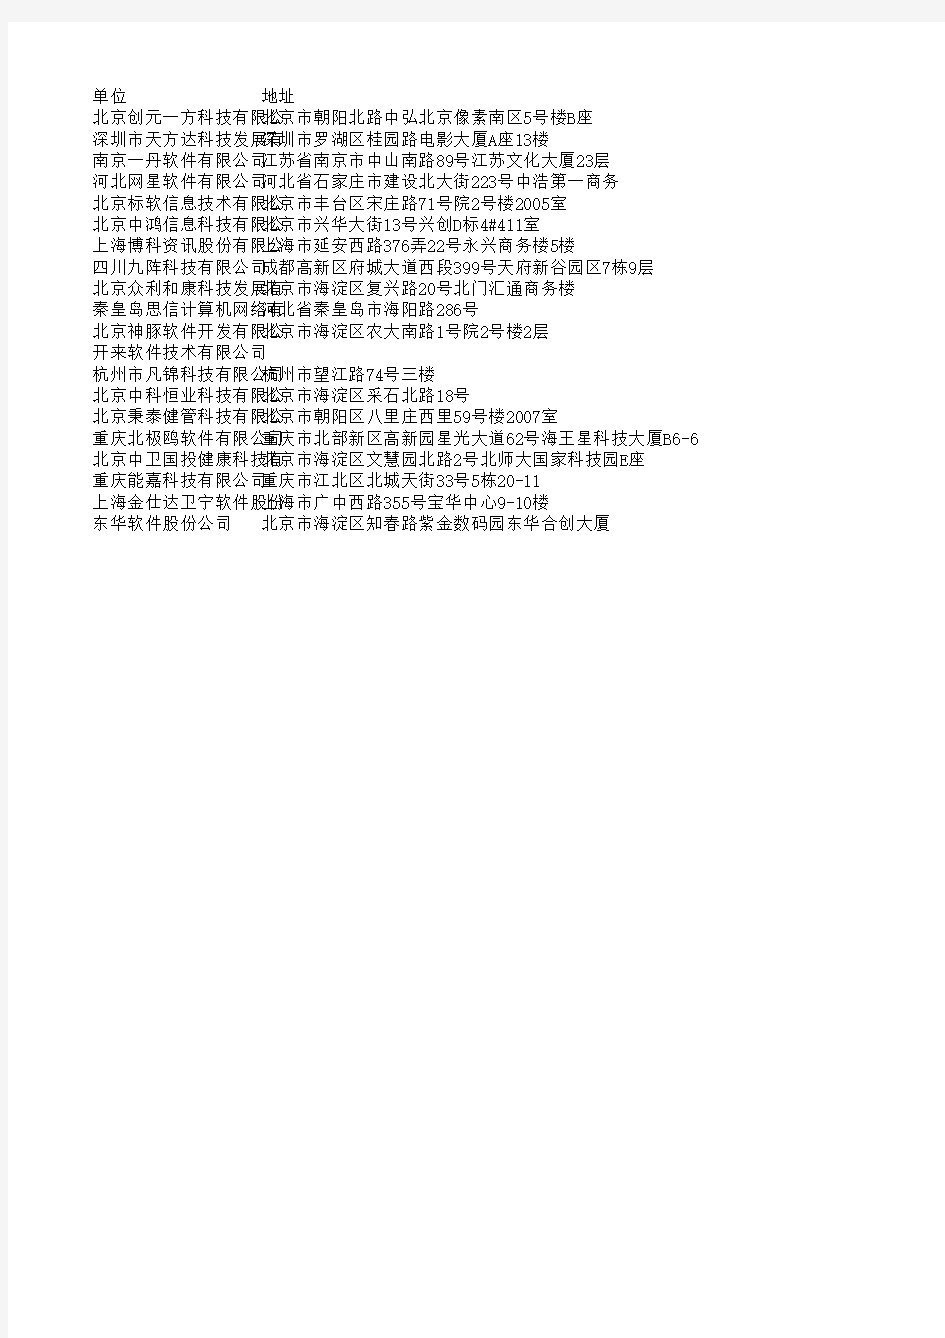 中国主要体检软件研发销售公司列表